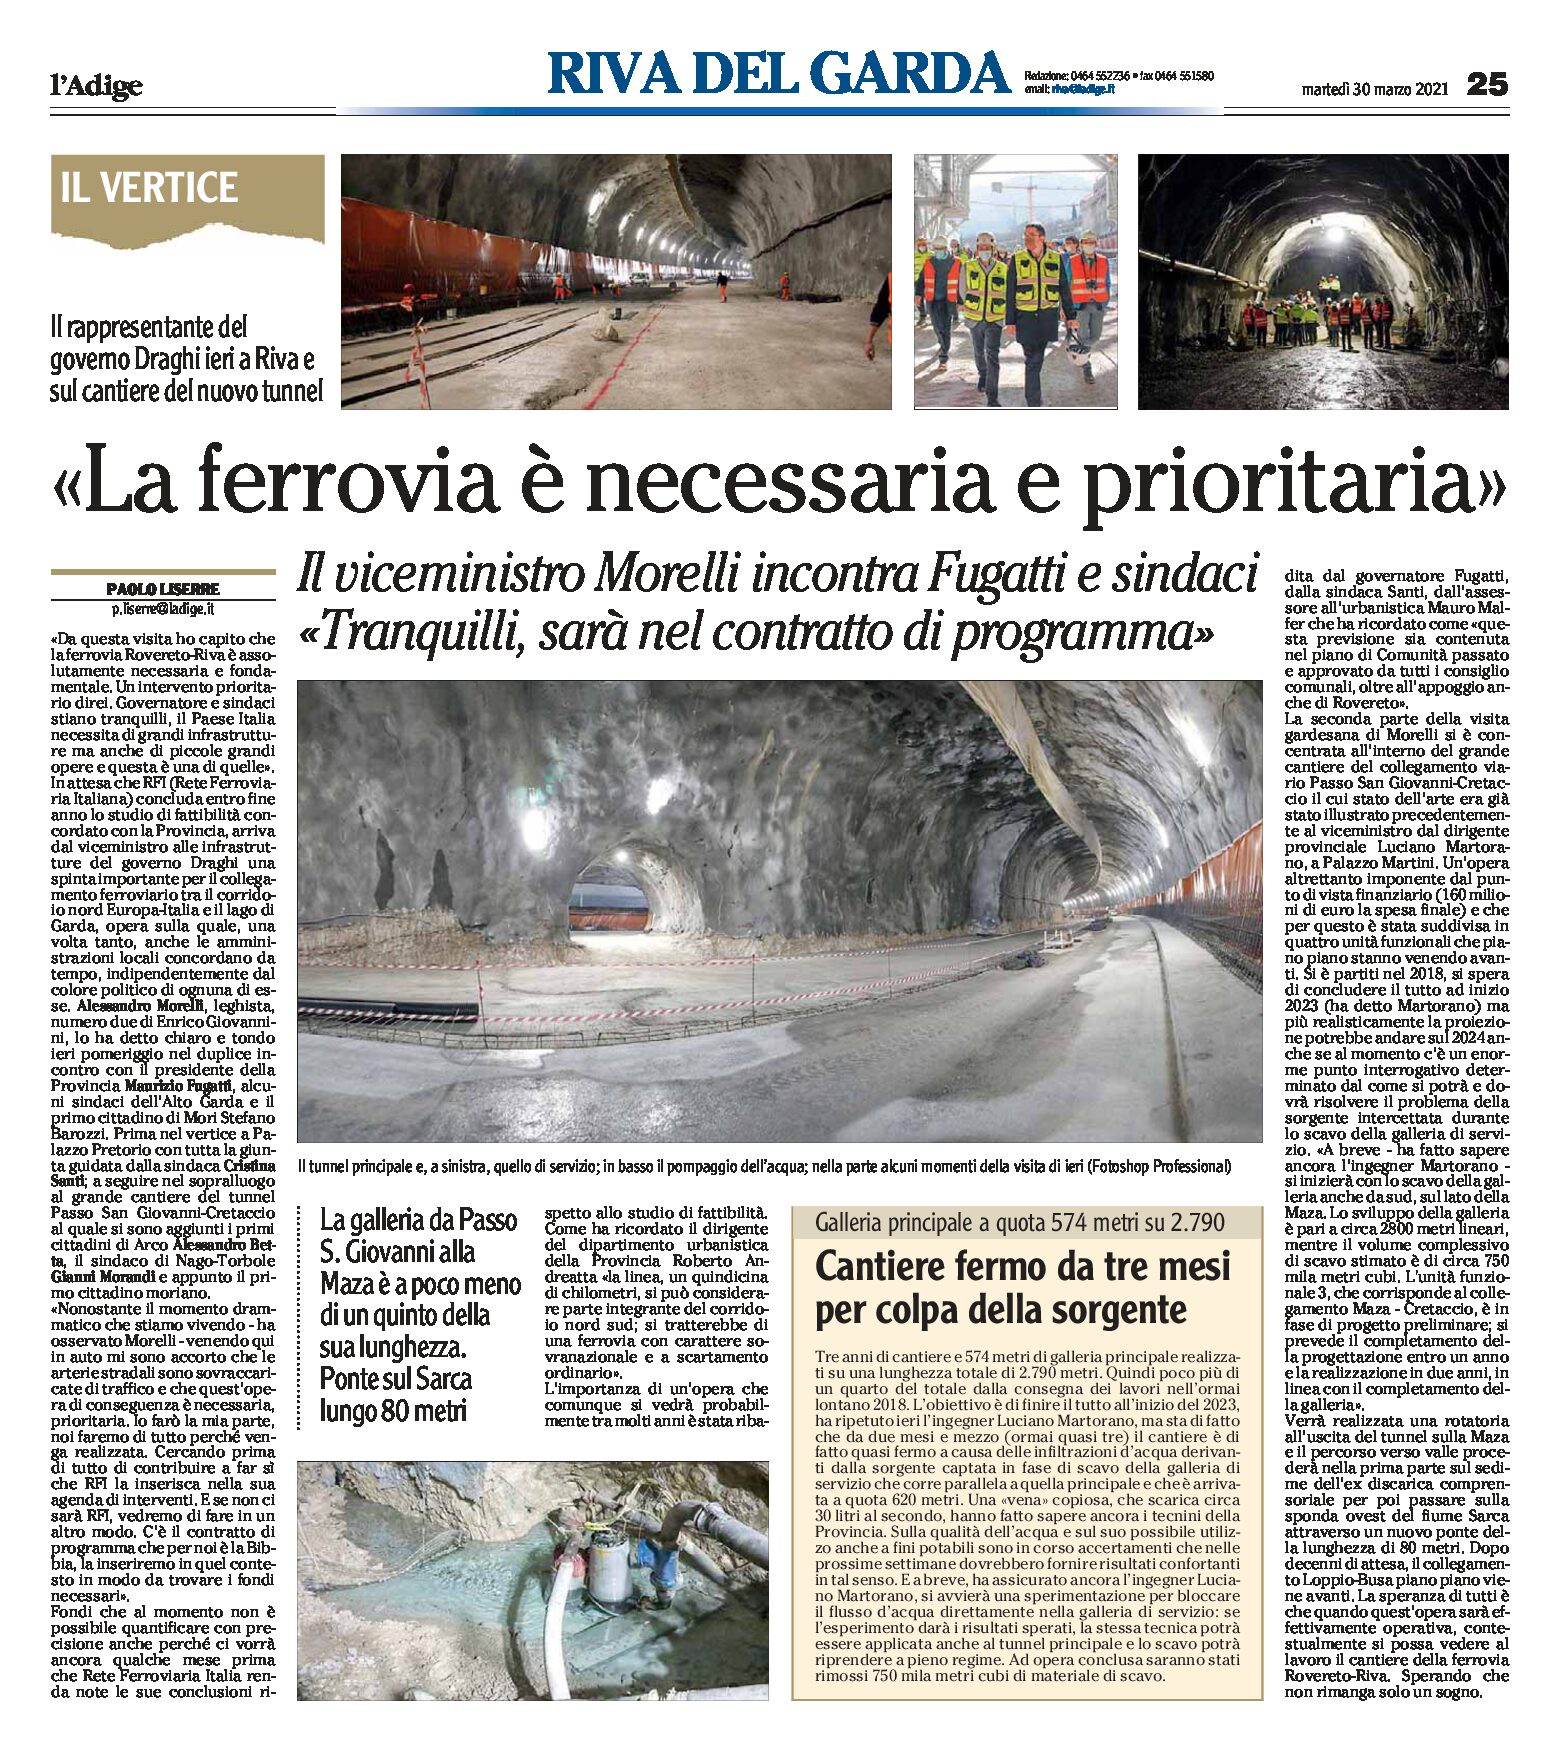 Rovereto-Riva: il viceministro alle infrastrutture Morelli “ferrovia necessaria e prioritaria”